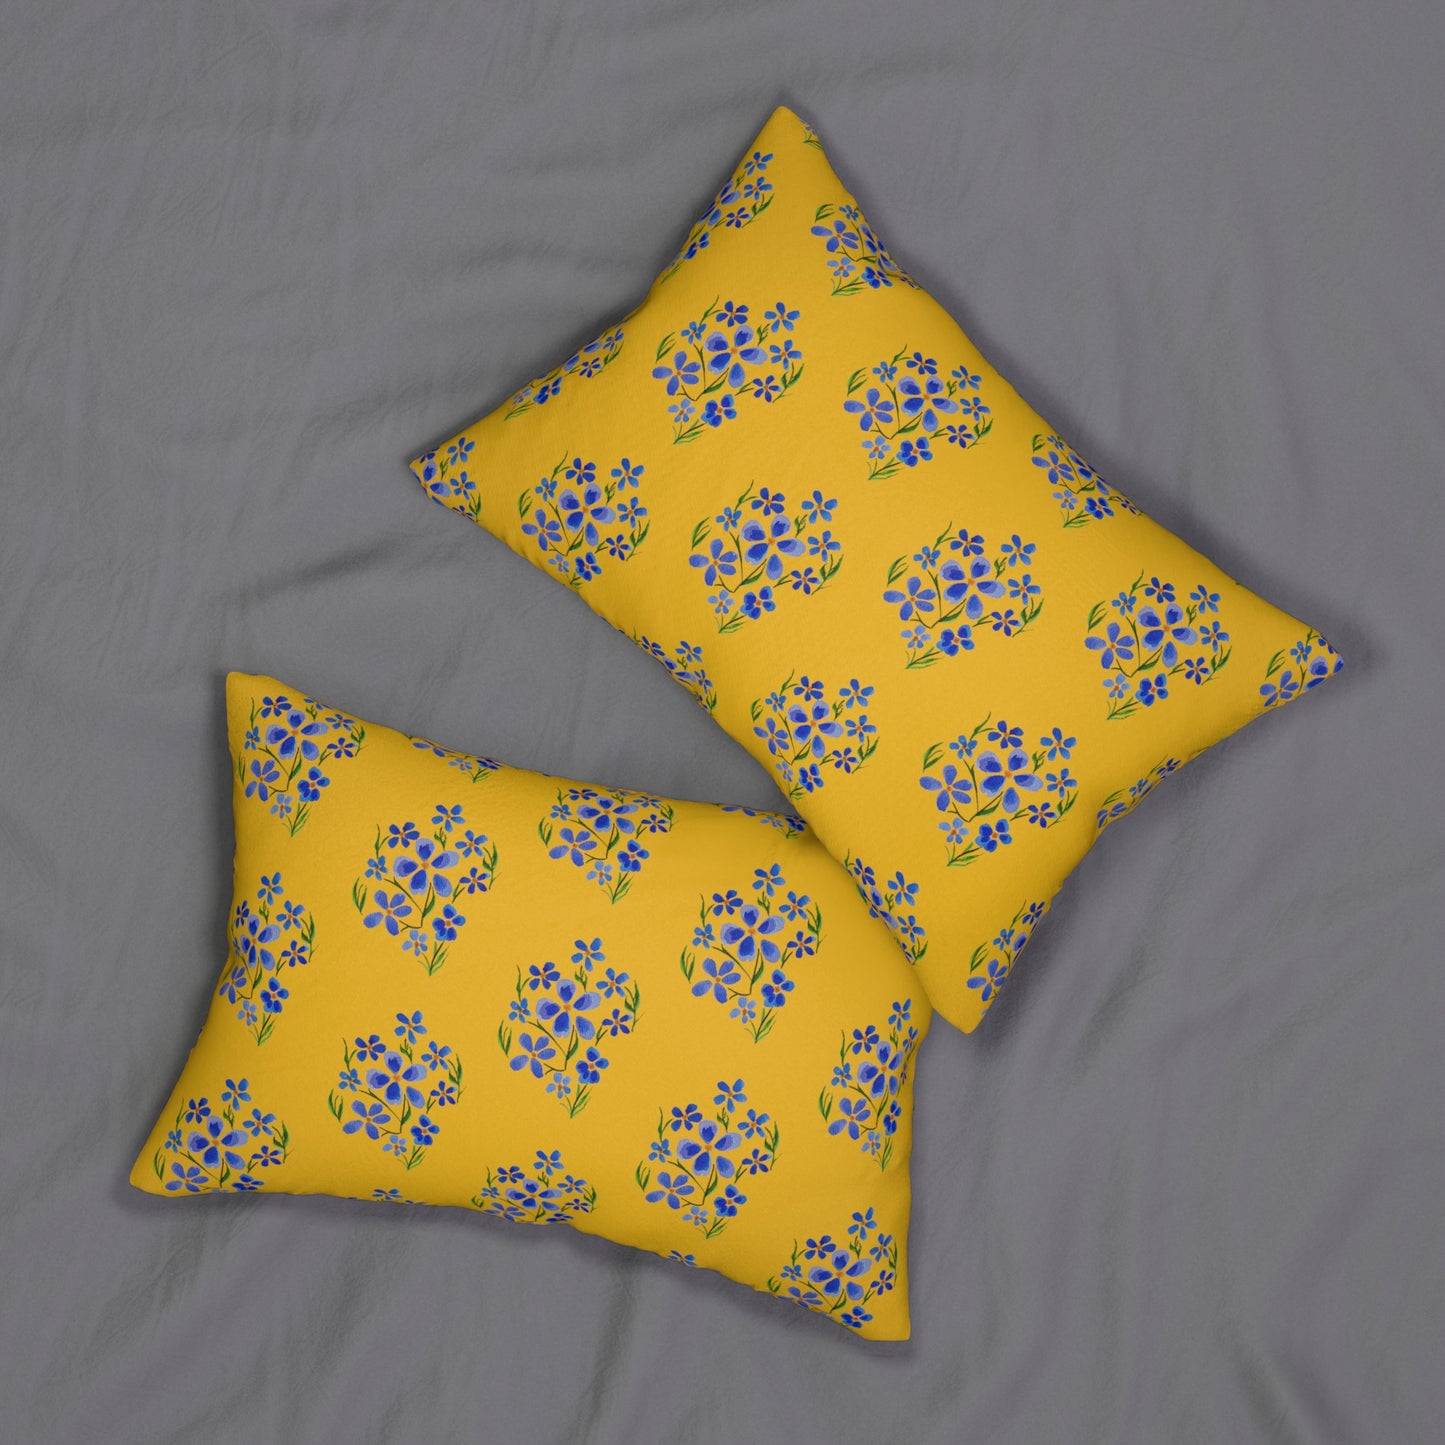 Forget Me Not Spun Polyester Yellow Lumbar Pillow